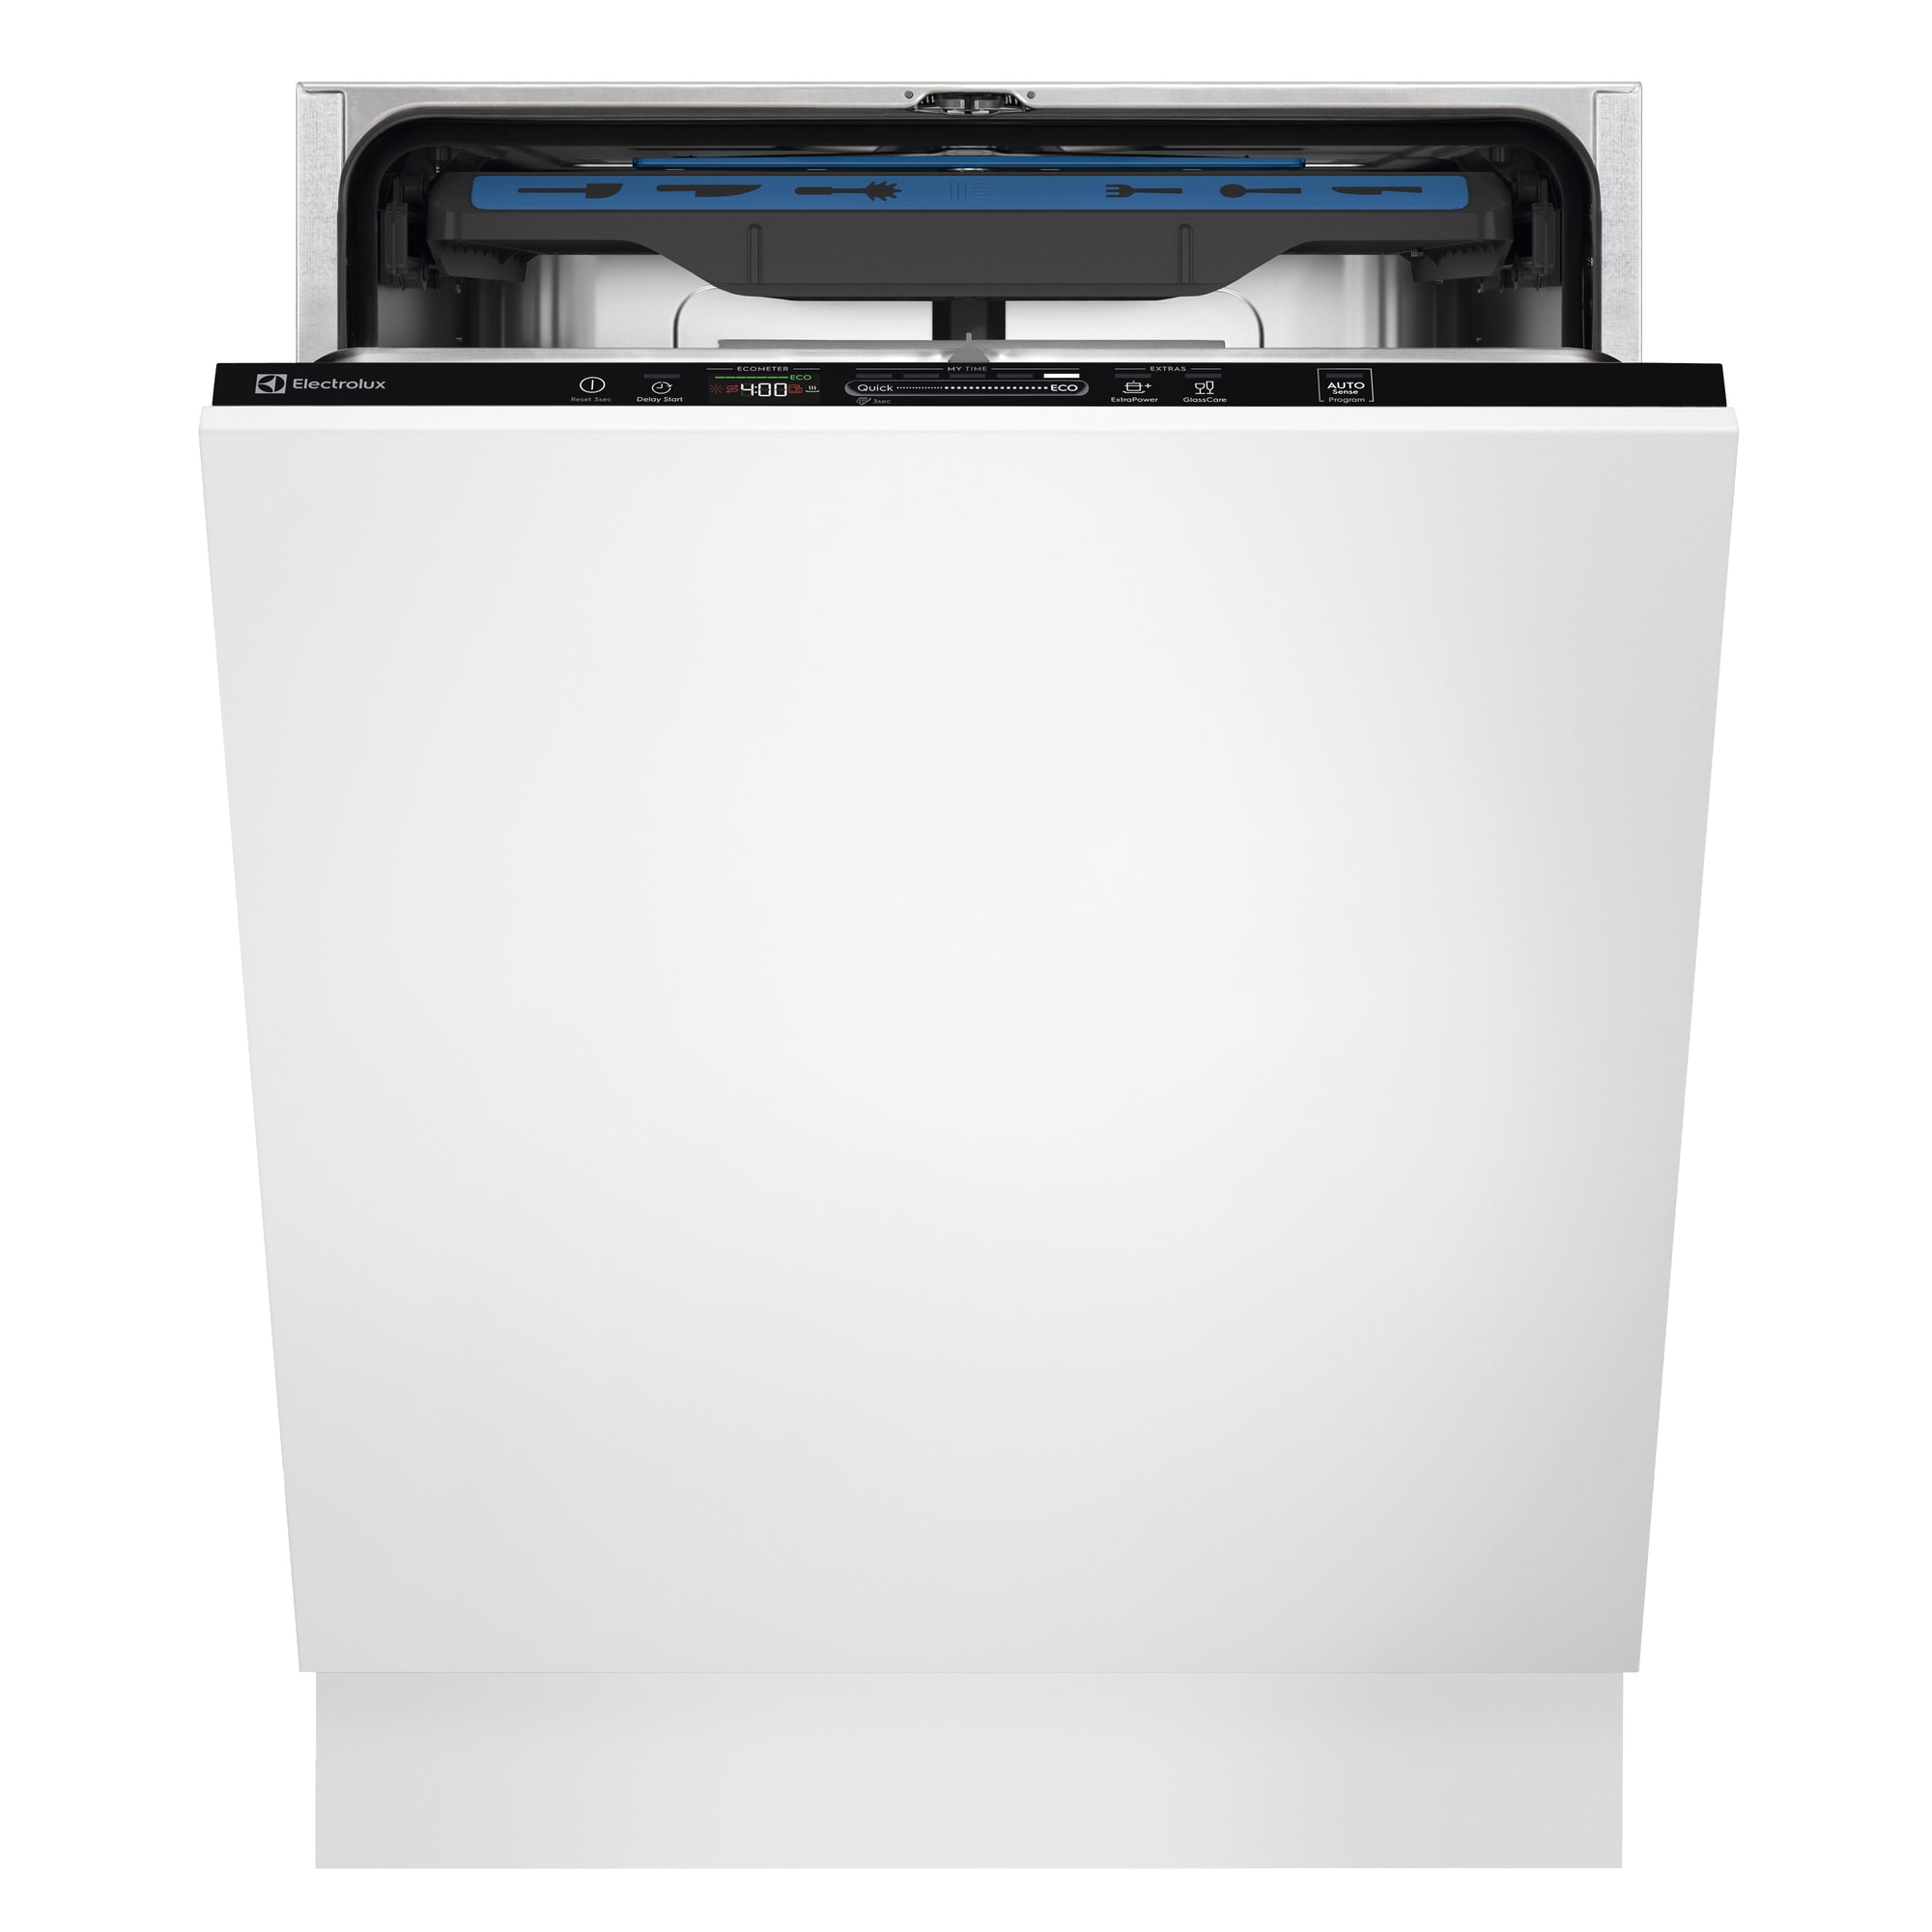 Køb Electrolux Opvaskemaskine online til meget lav pris!